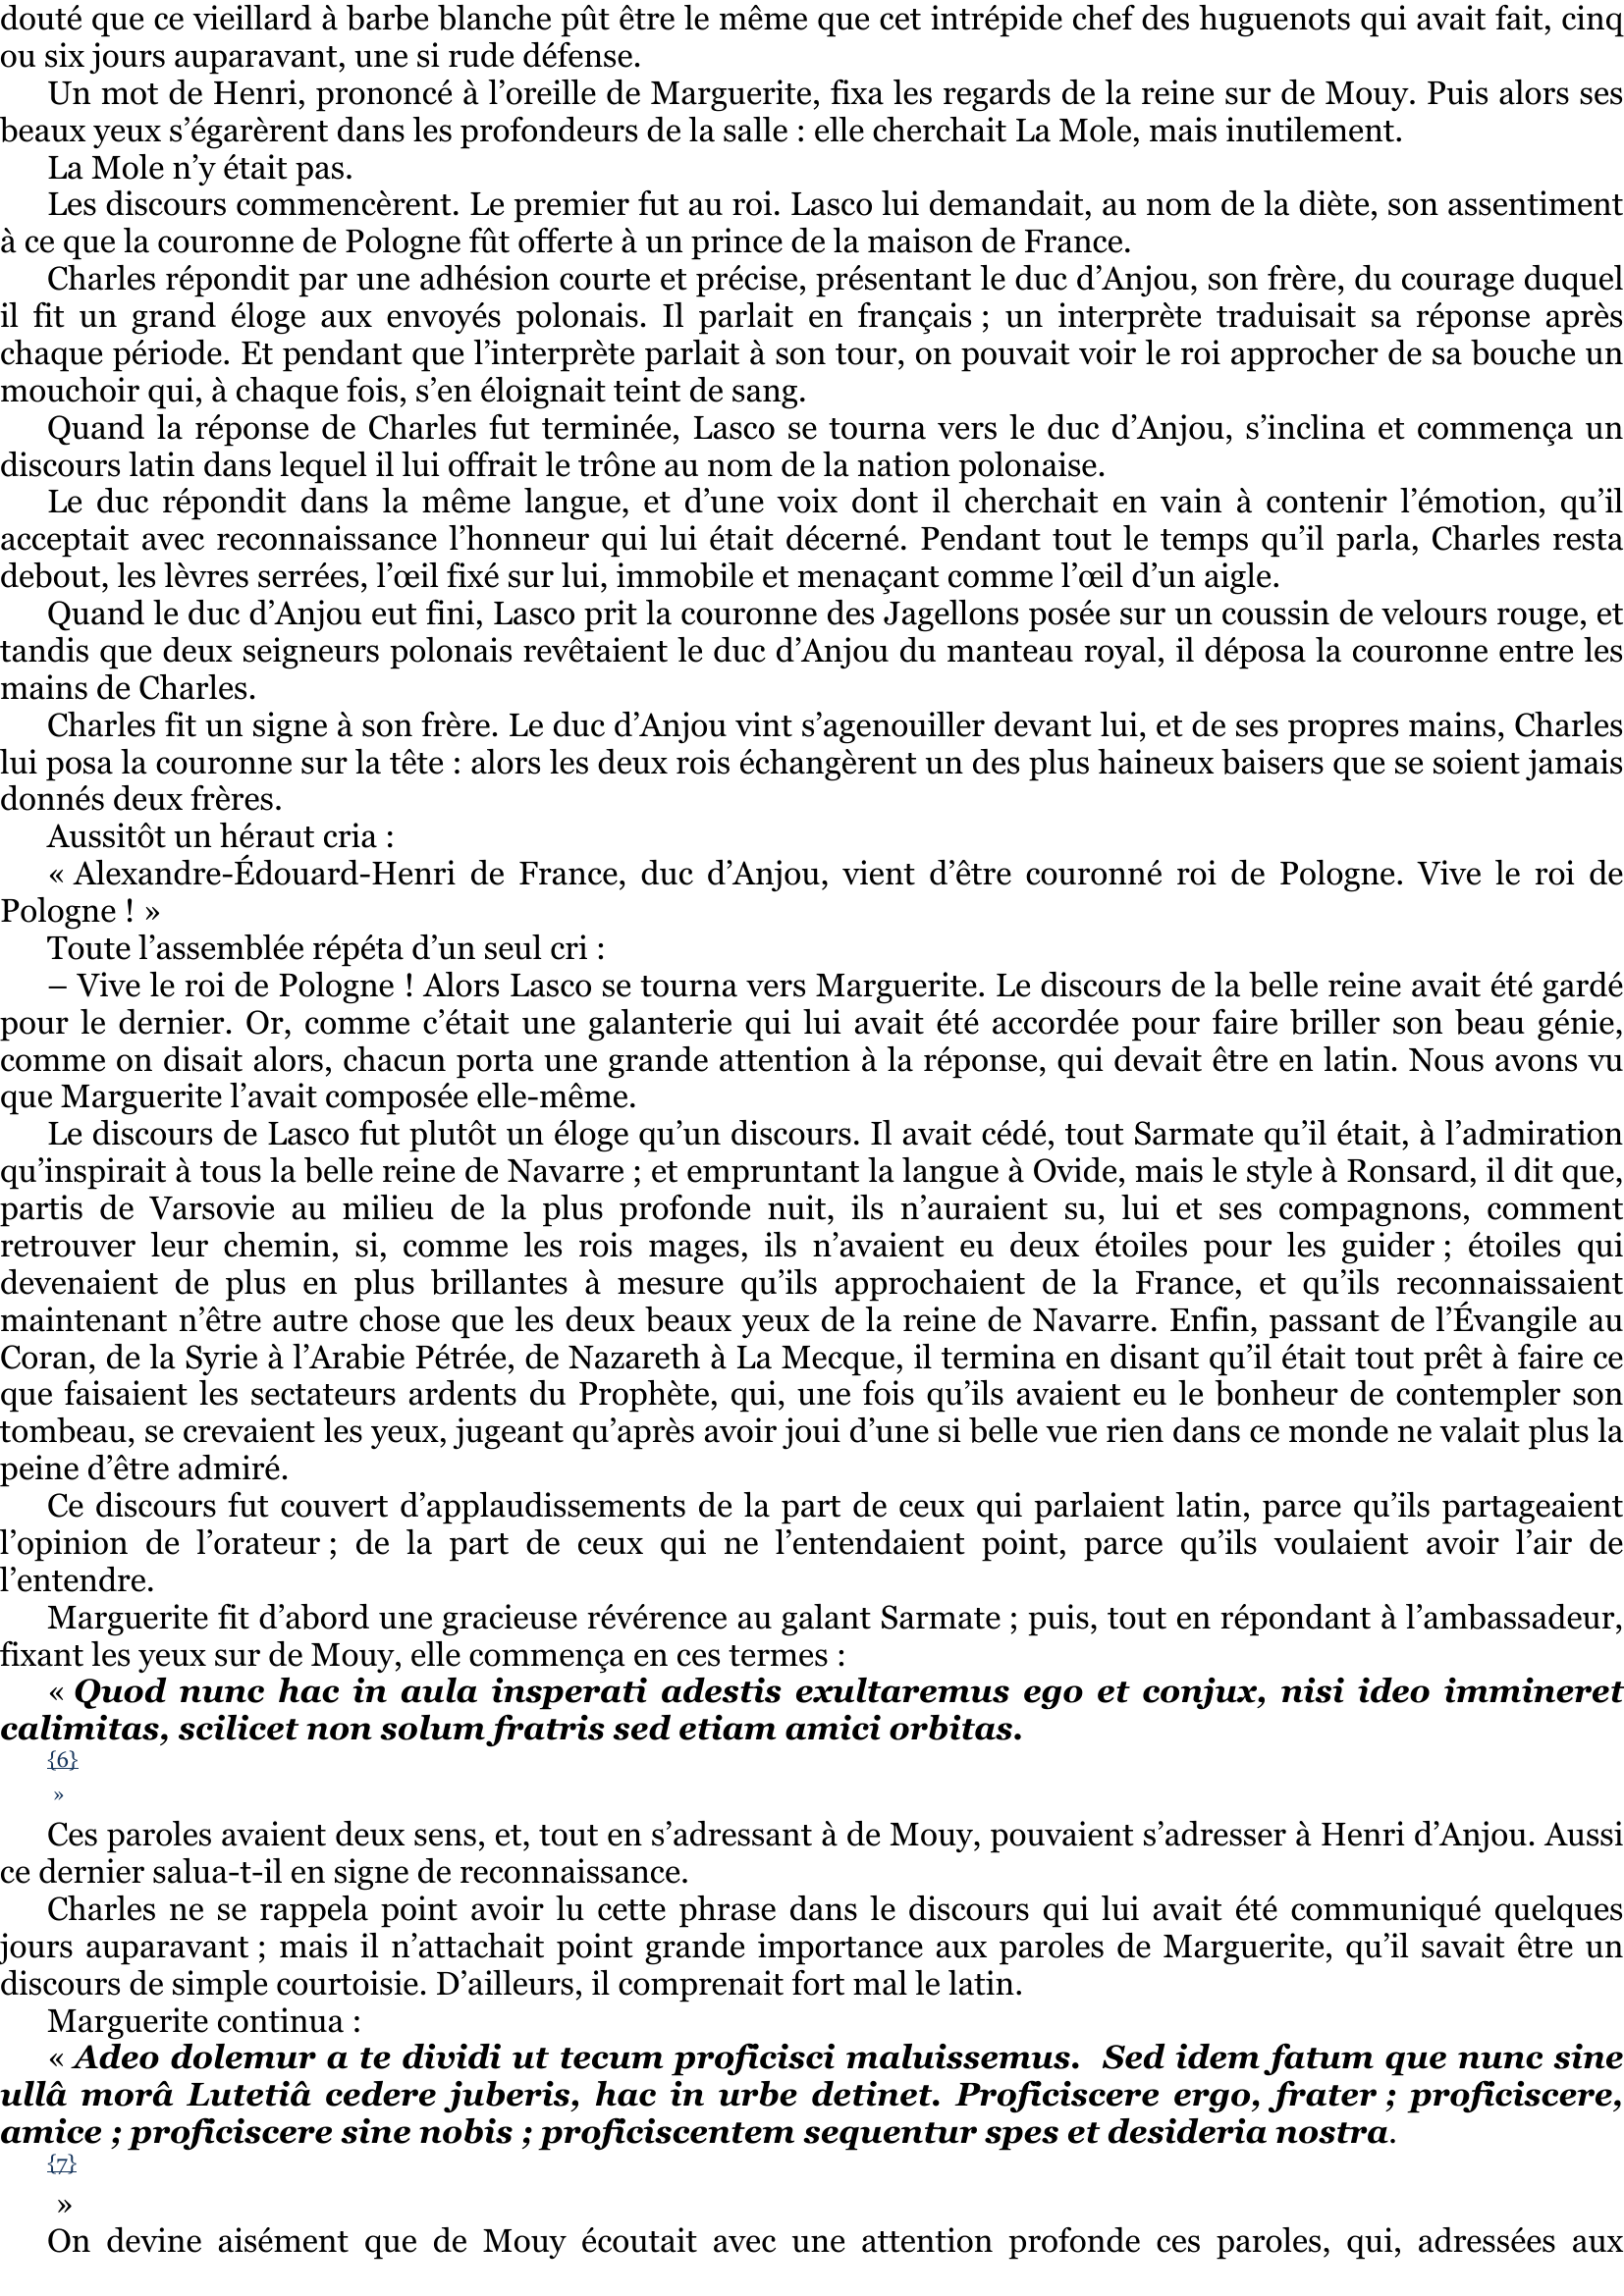 Prévisualisation du document XII - Les ambassadeurs

 
Le lendemain toute la population de Paris s'était portée vers le faubourg Saint-Antoine, par lequel il avait été
décidé que les ambassadeurs polonais feraient leur entrée.